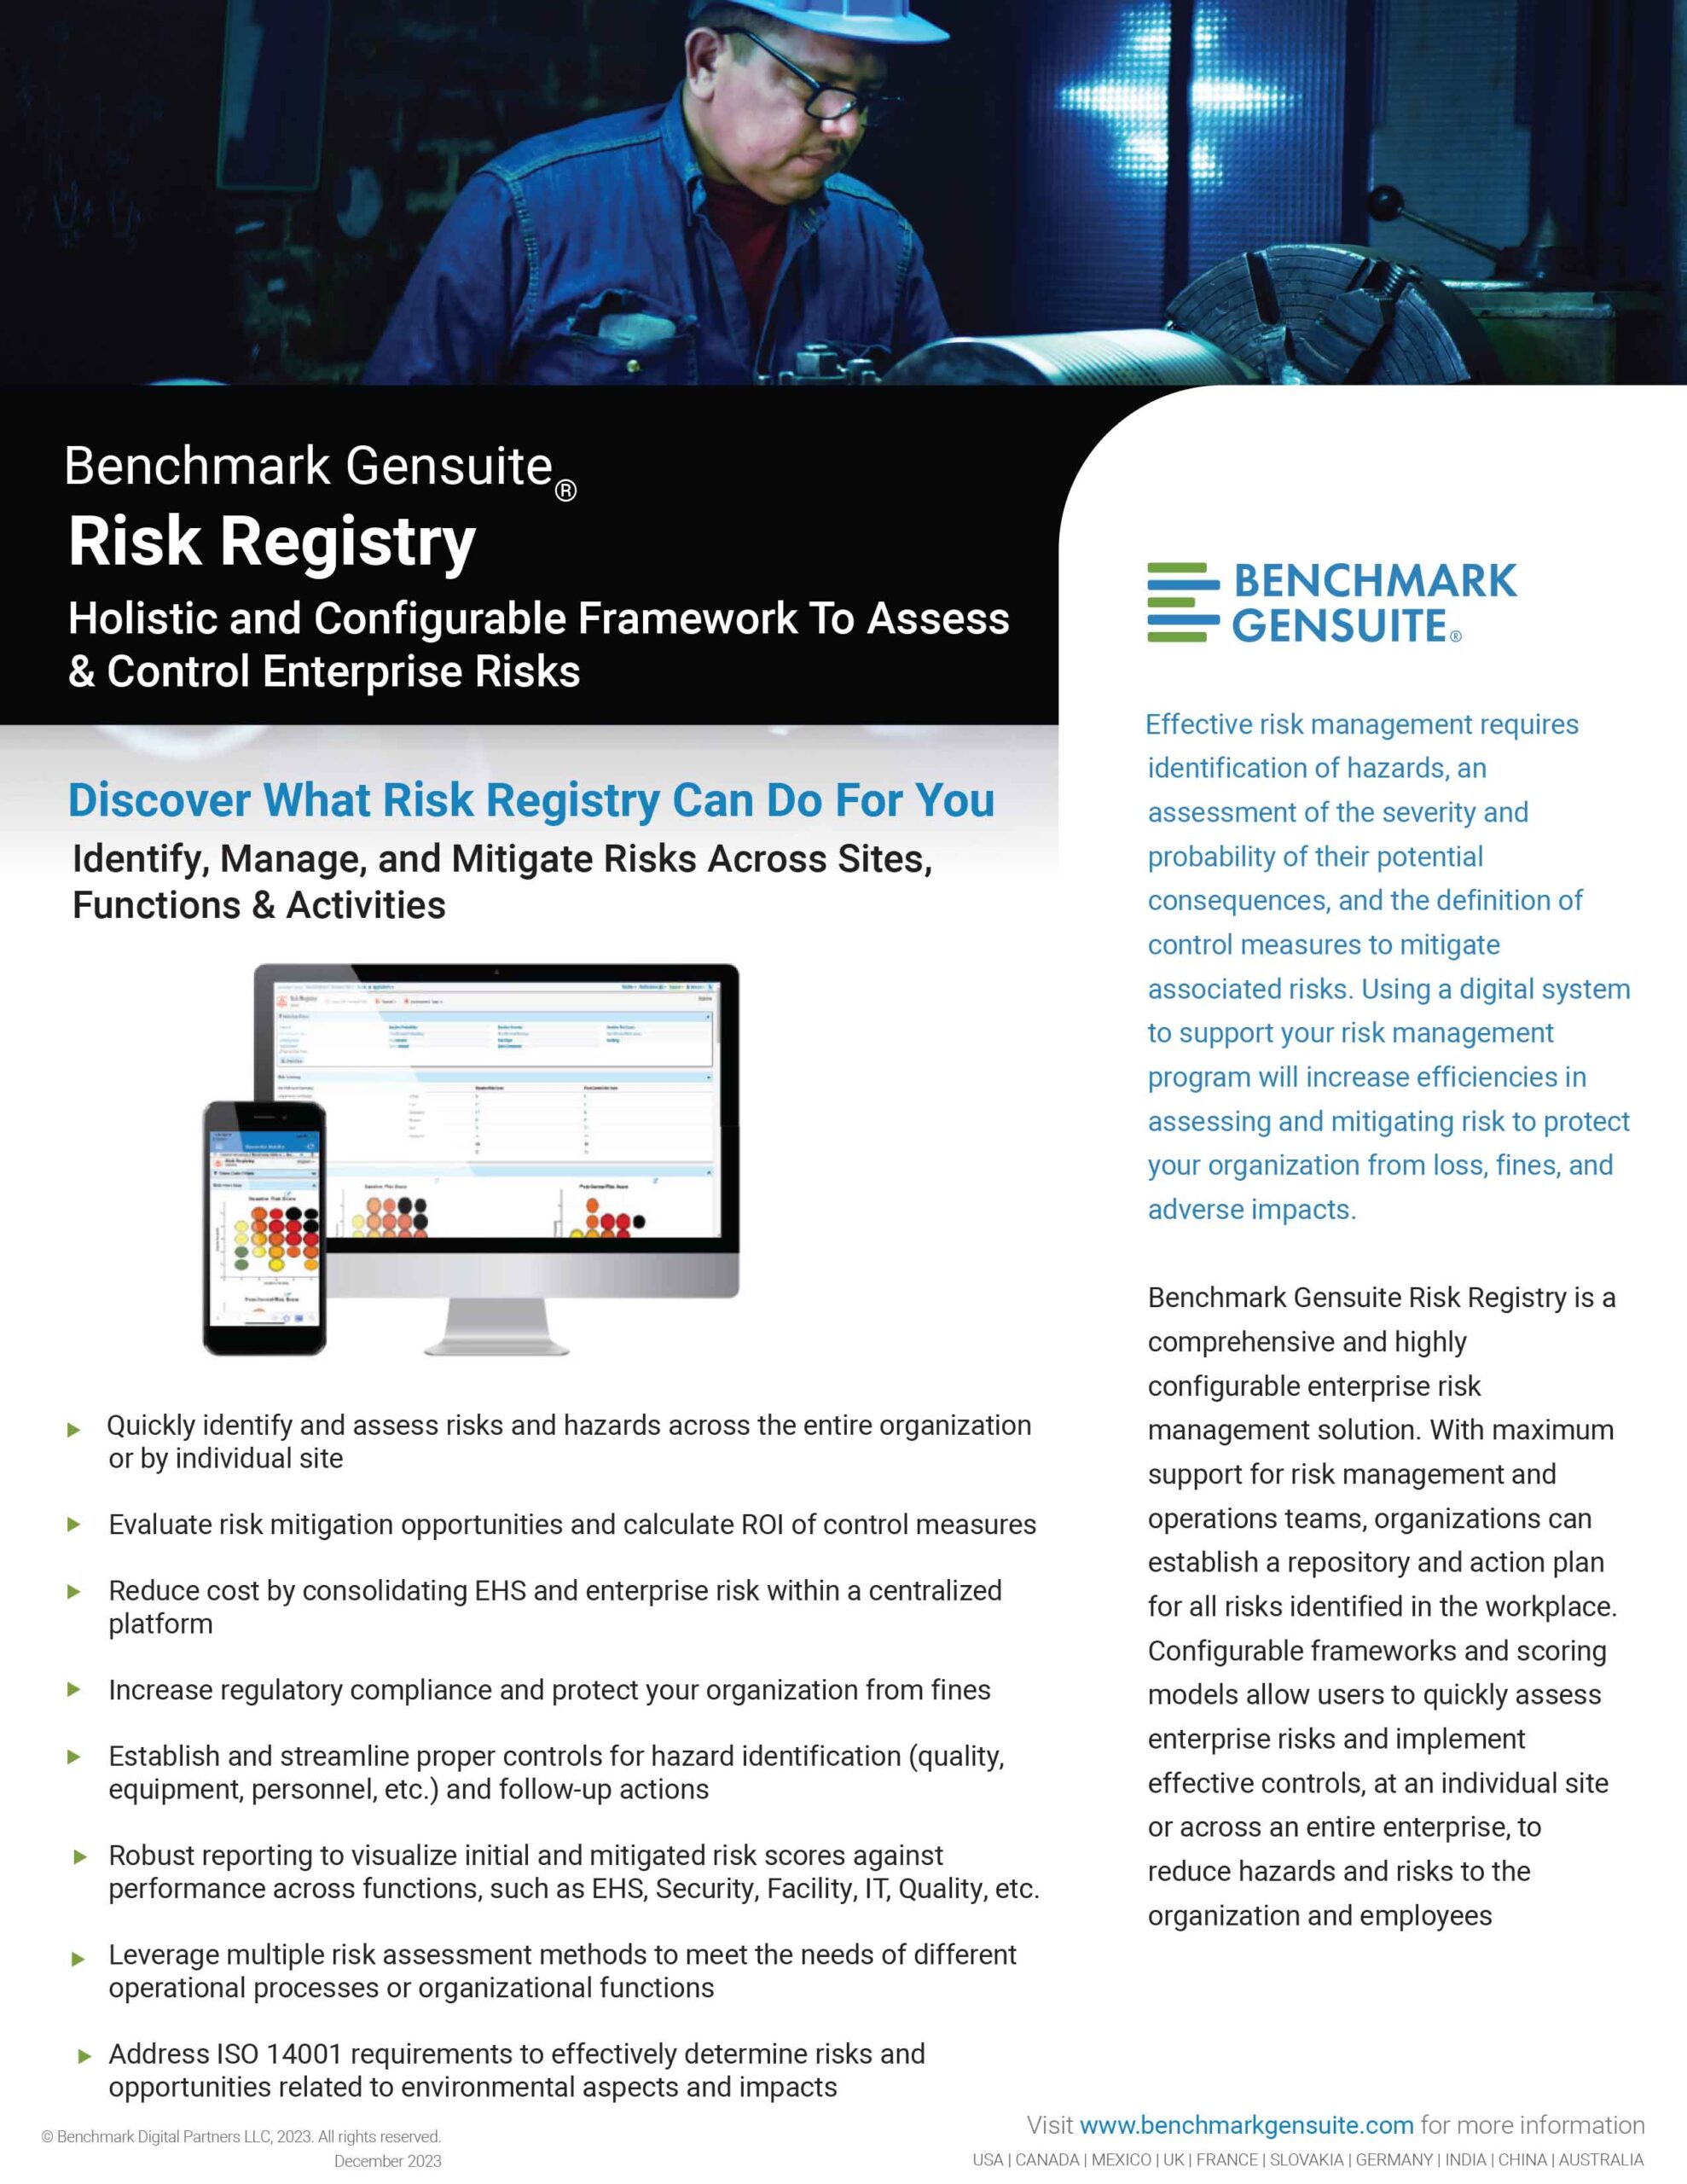 Risk Registry